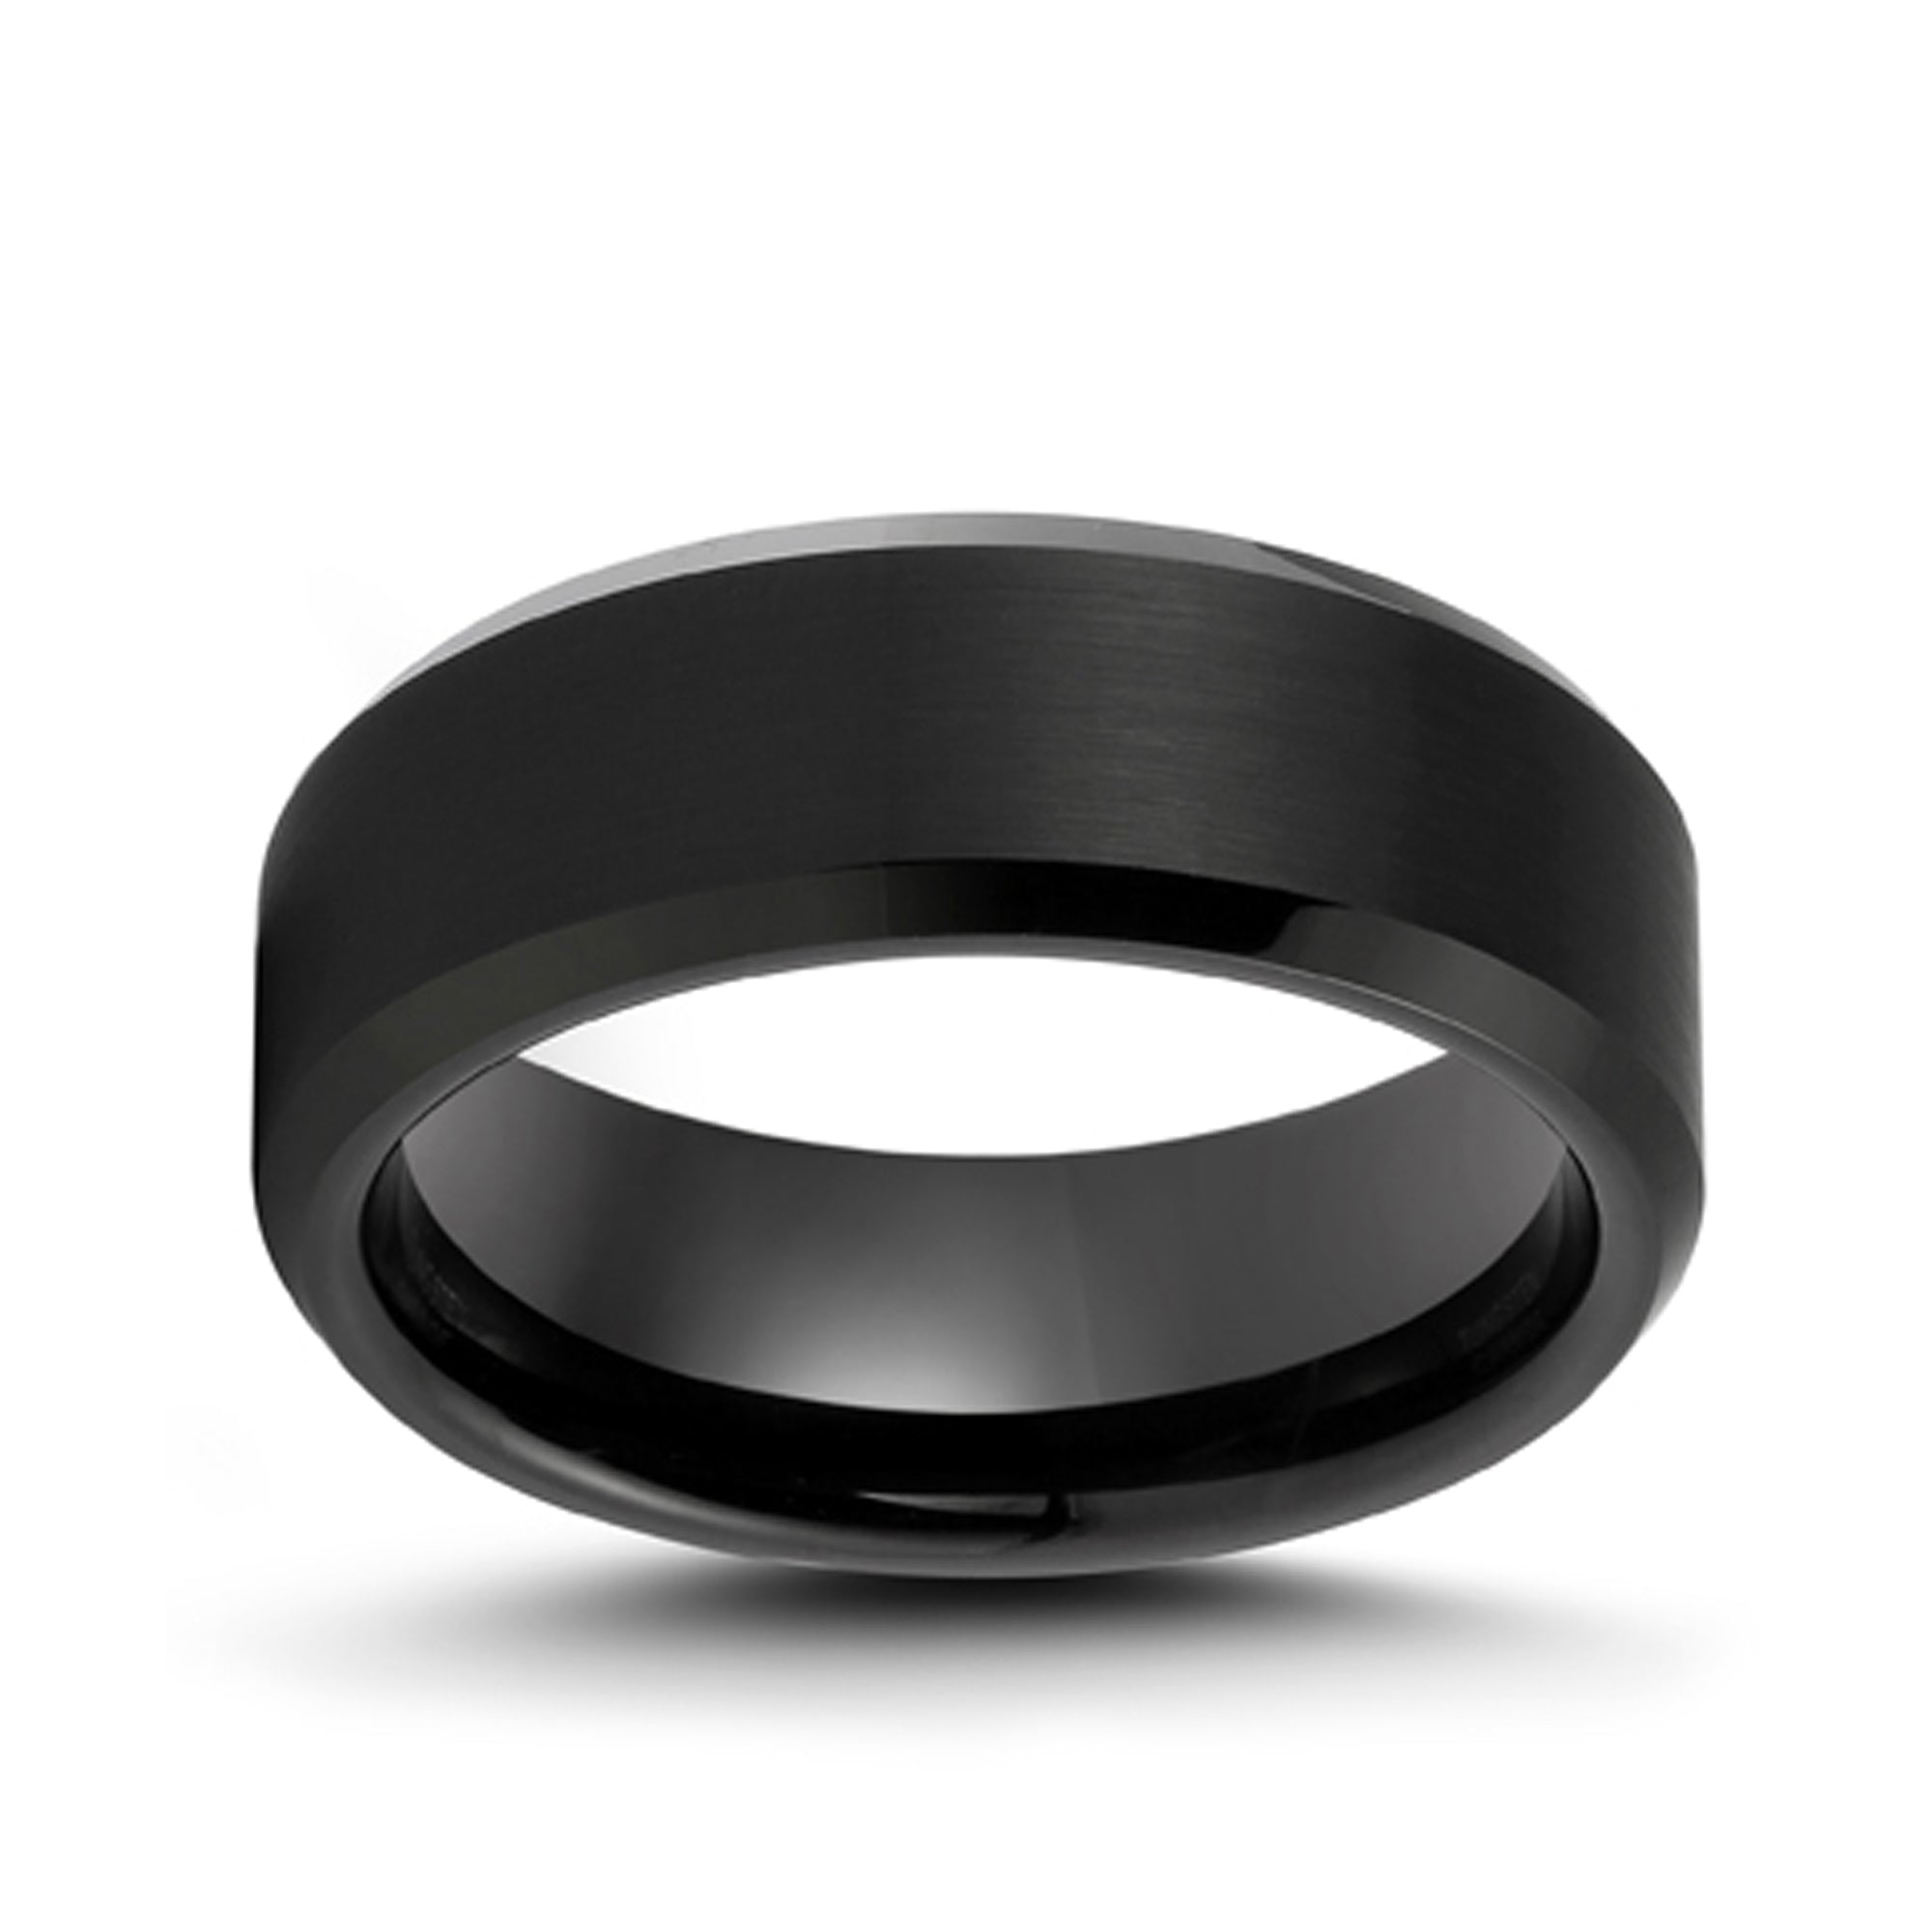 Black Matte Satin Finished Titanium Ring with Polished Beveled Edge, 8MM